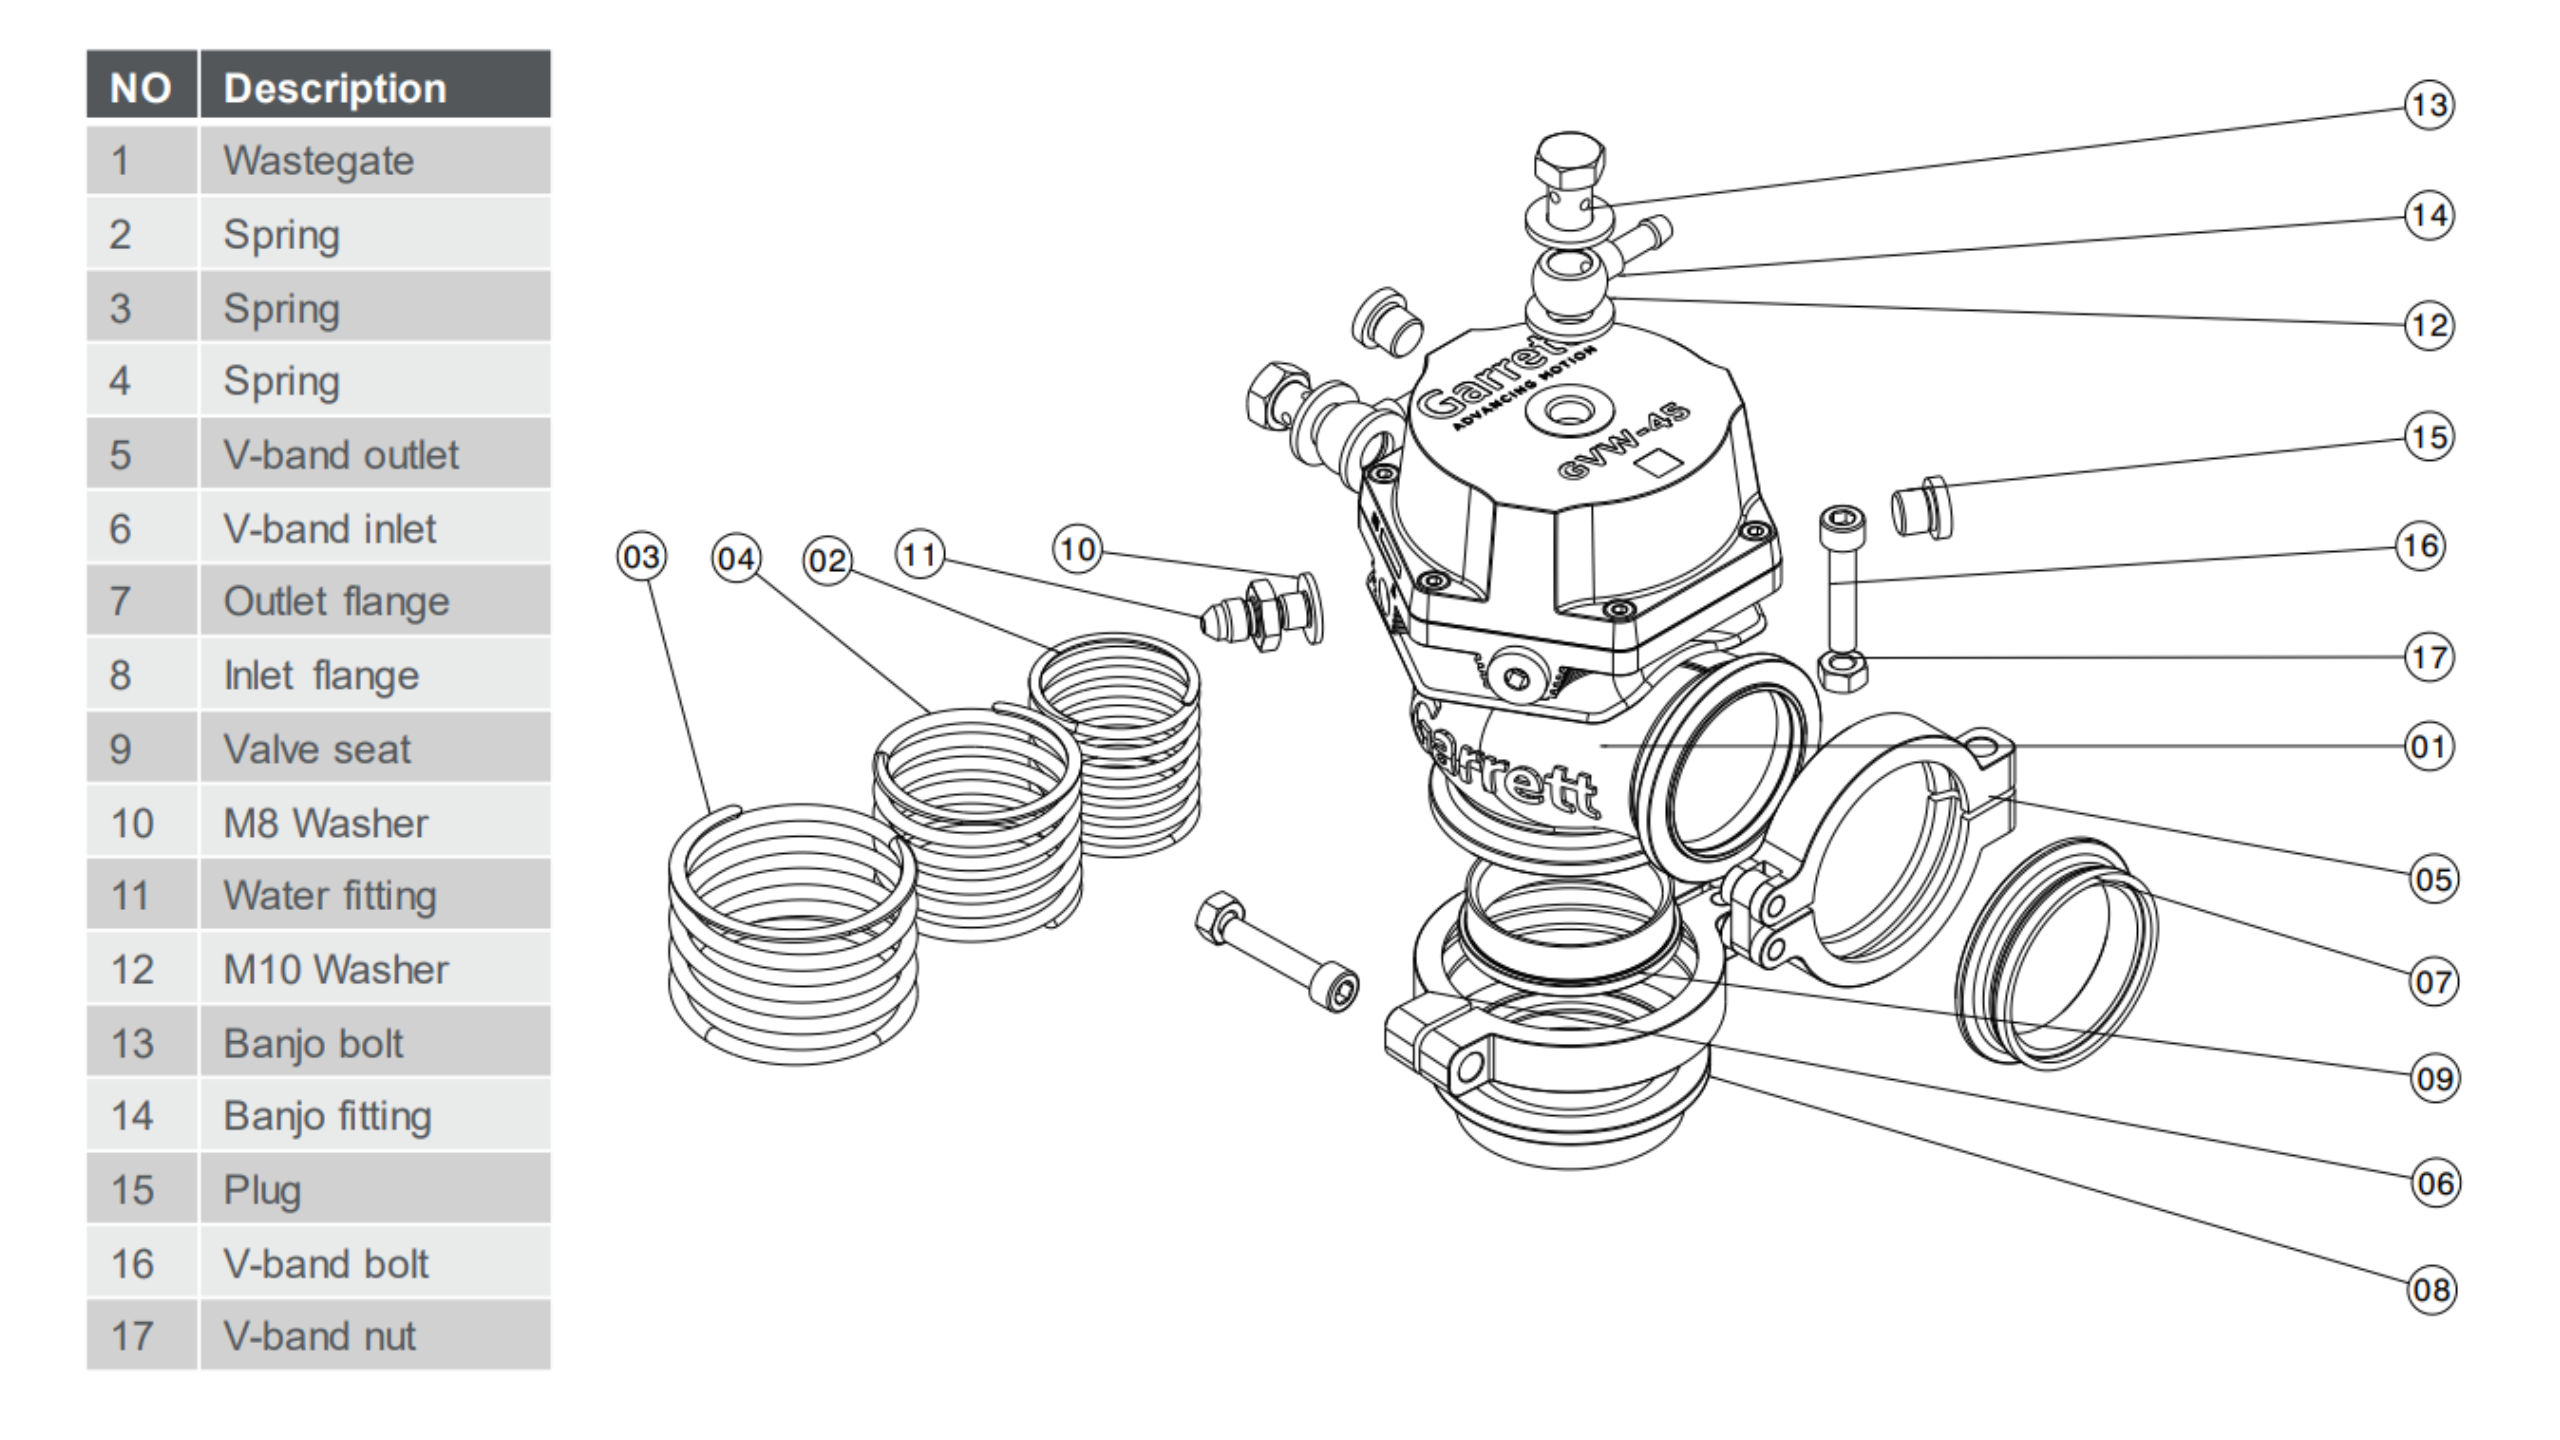 GARRETT 910478-0003 Комплект клапана/втулки 50 мм (включає клапан, втулку, ущільнювальну шайбу, кільце ущільнювача, гайку штока клапана та гніздо) для Вестгейта GVW-50 Photo-2 